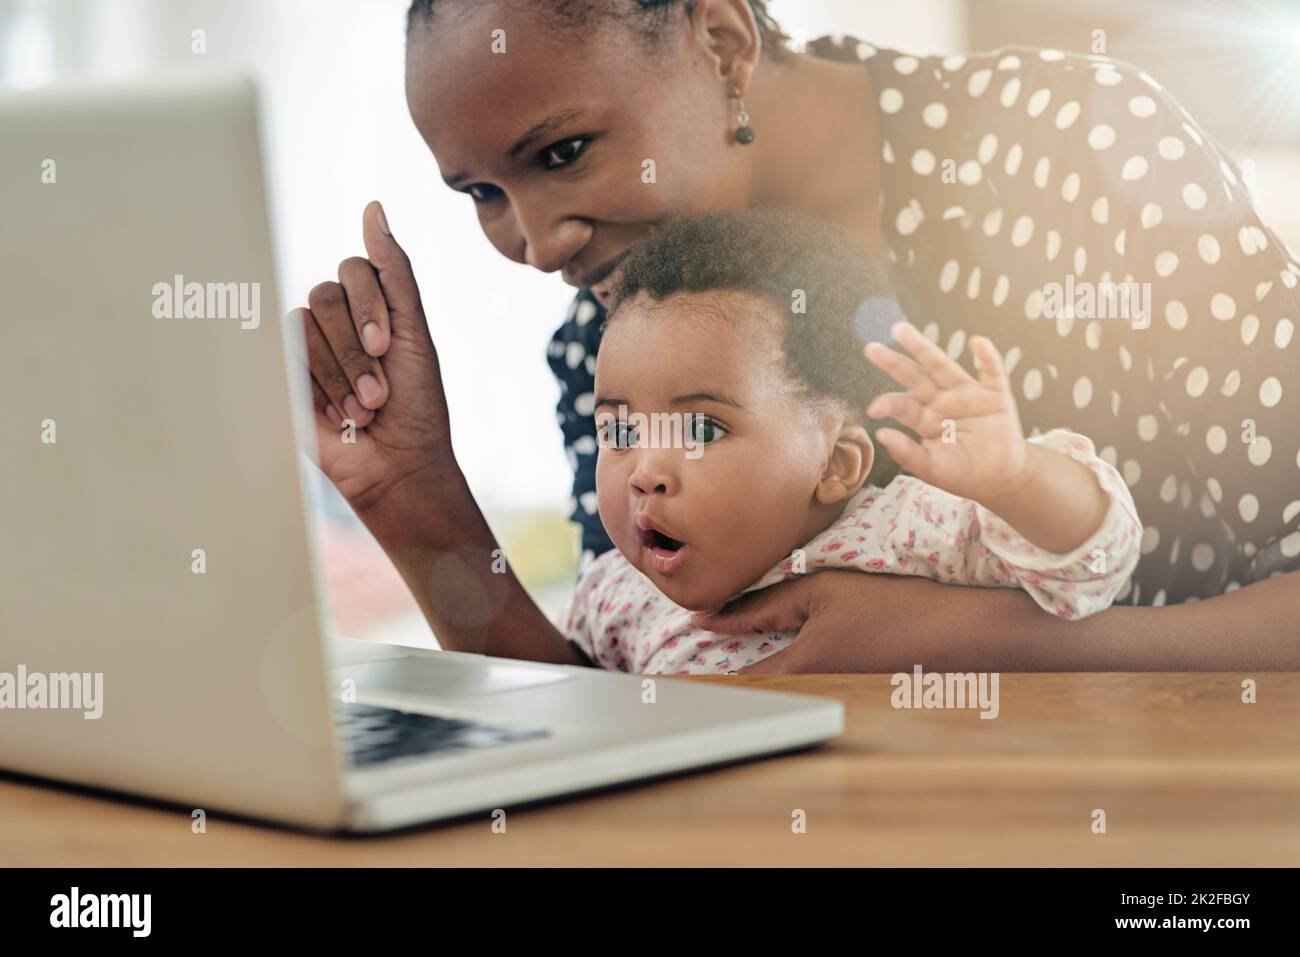 Curieux jeune esprit. Photo d'une mère et de sa petite fille assise devant un ordinateur portable. Banque D'Images